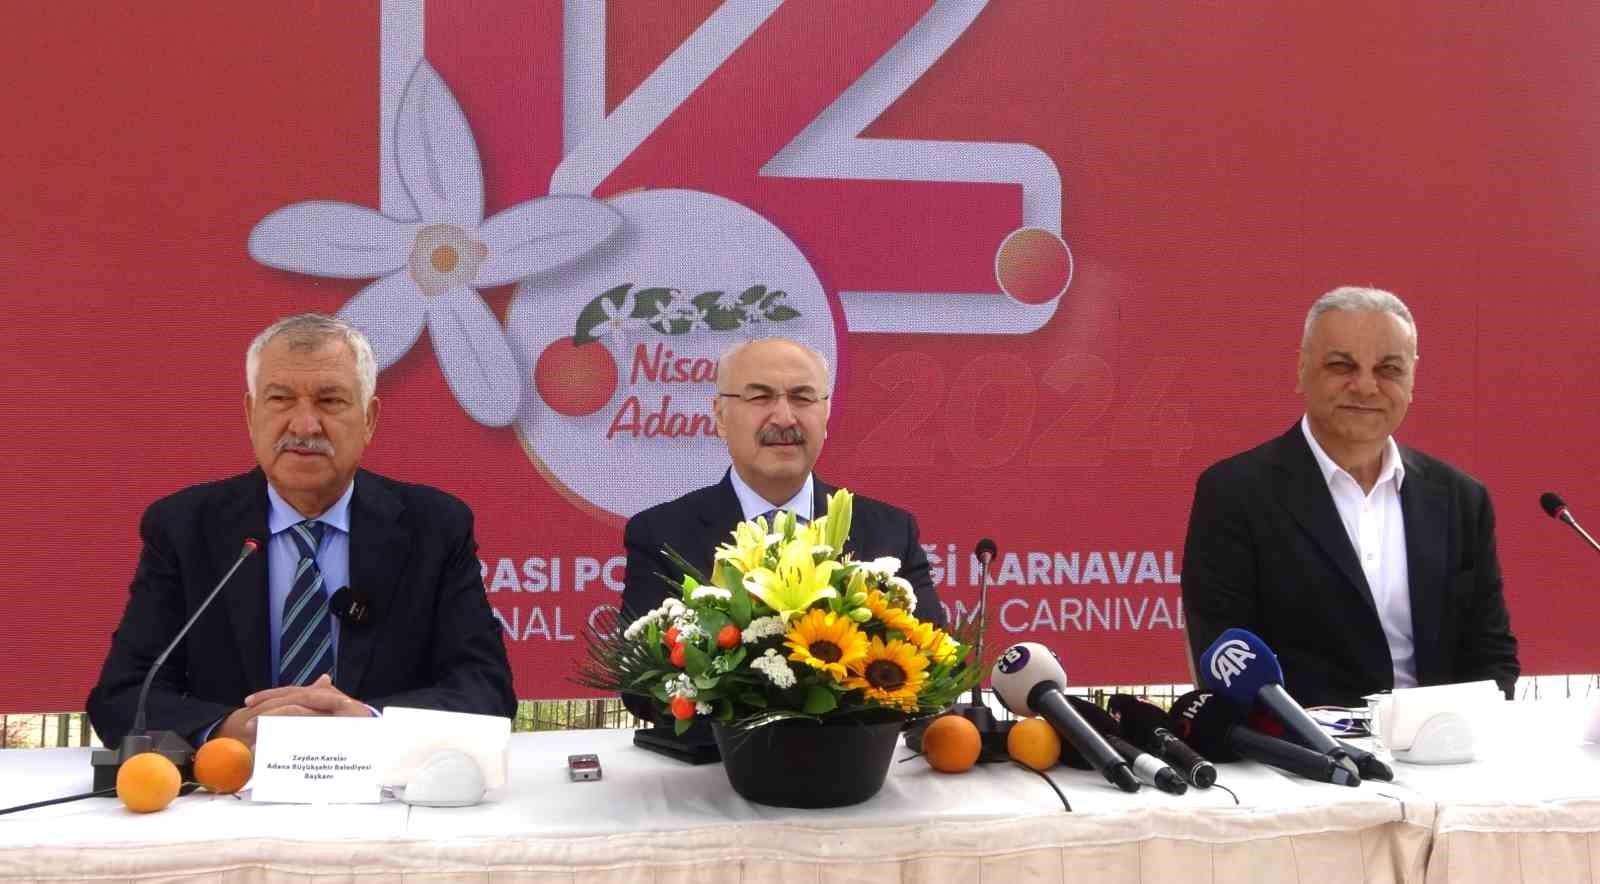 Karnaval Komitesi Başkanı Bozkurt: “Karnaval 5 milyar TL’nin üzerinde ekonomik değere ulaşacak”